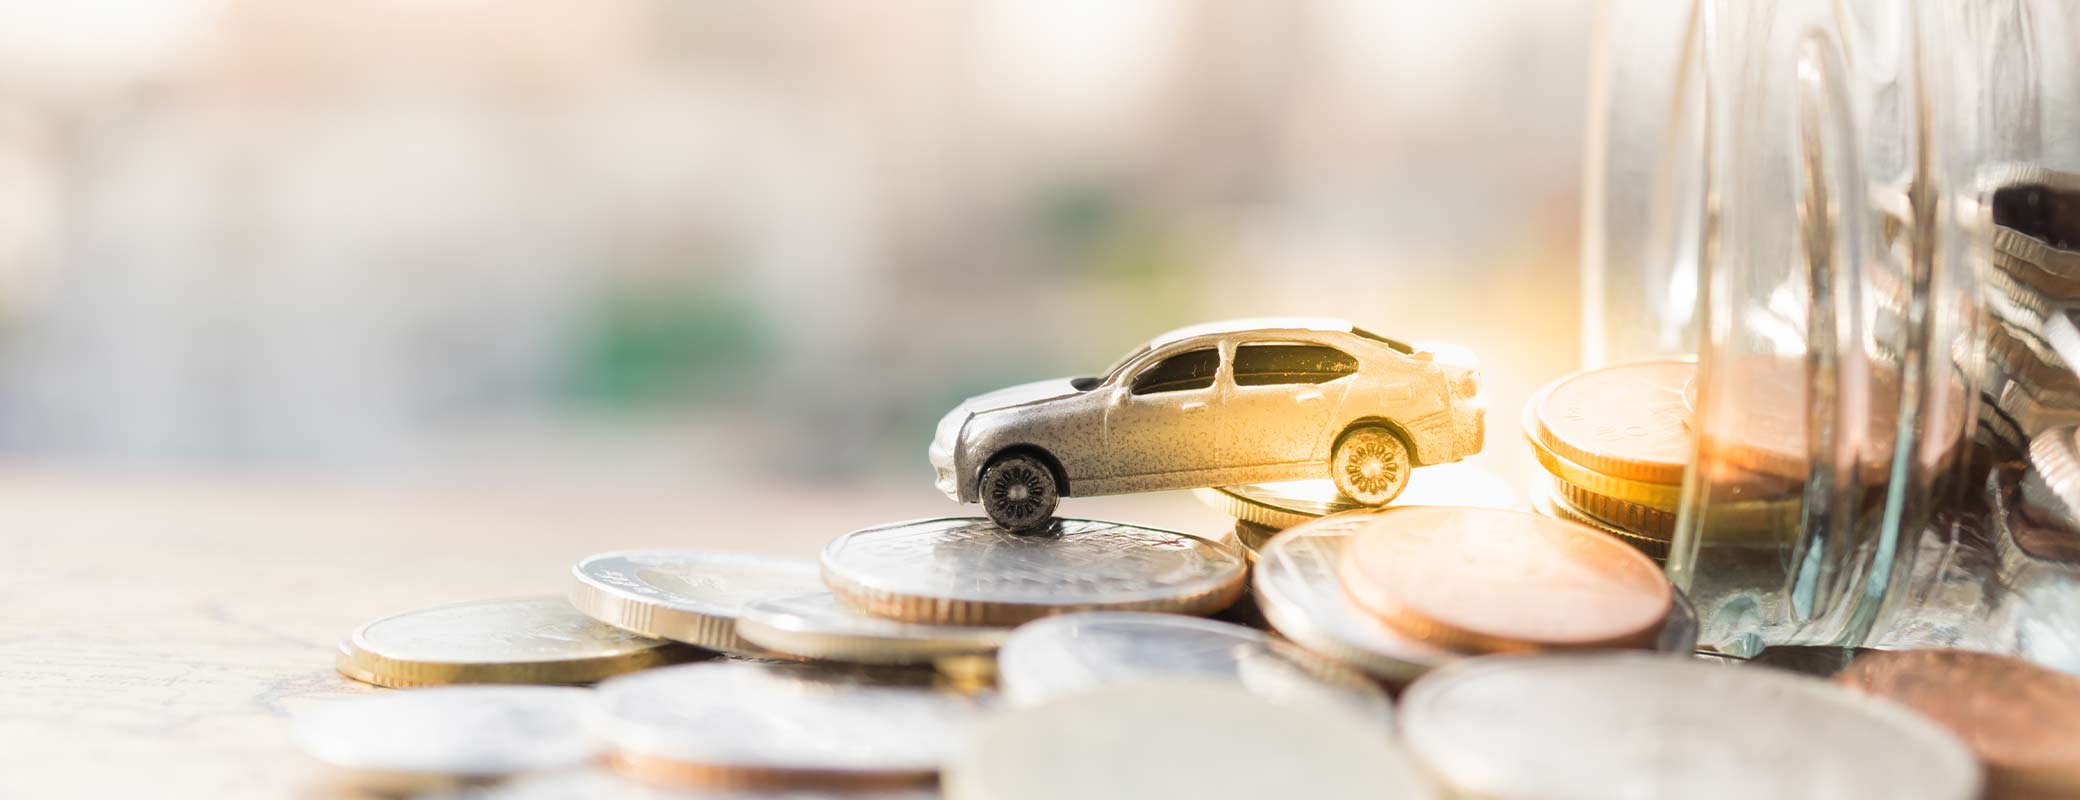 EuGH-Urteil zum Kreditwiderruf: Finanziertes Auto zurückgeben und kassieren!